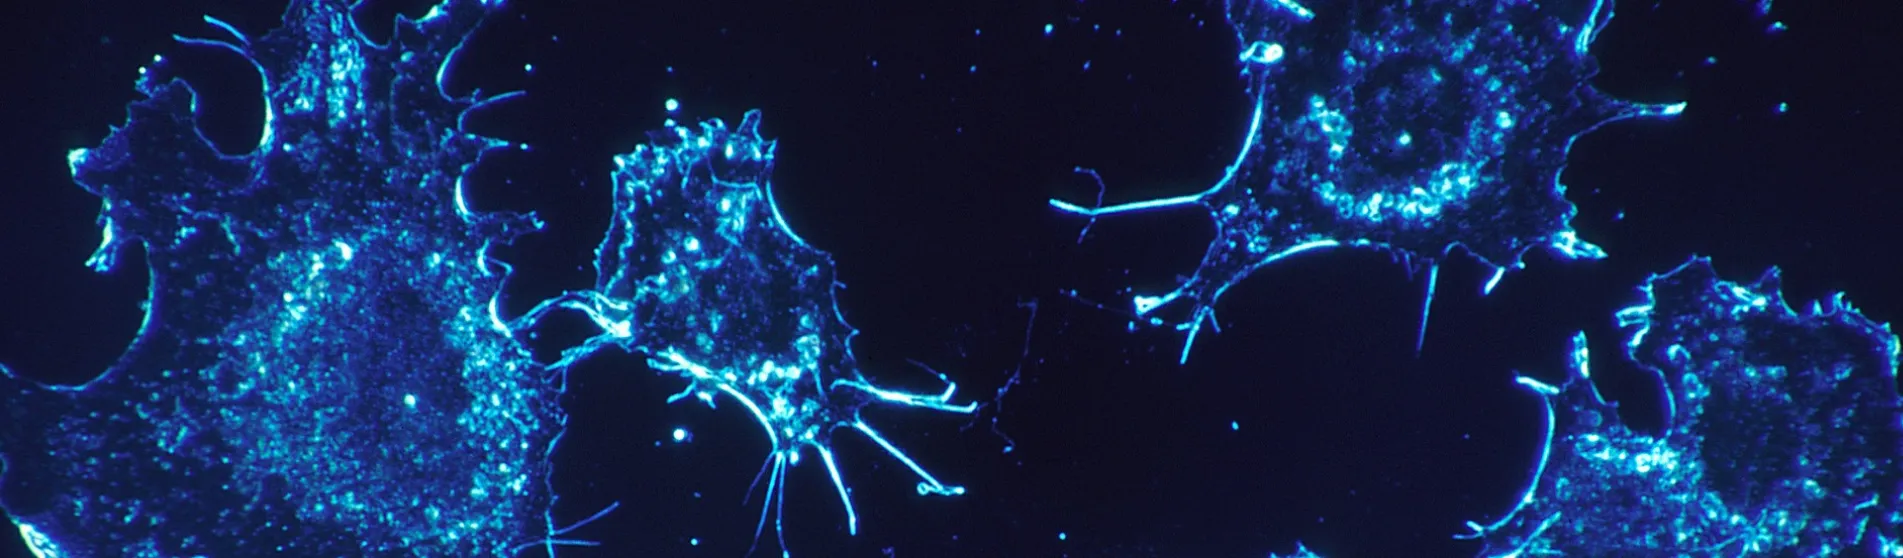 cancer-cells-blue